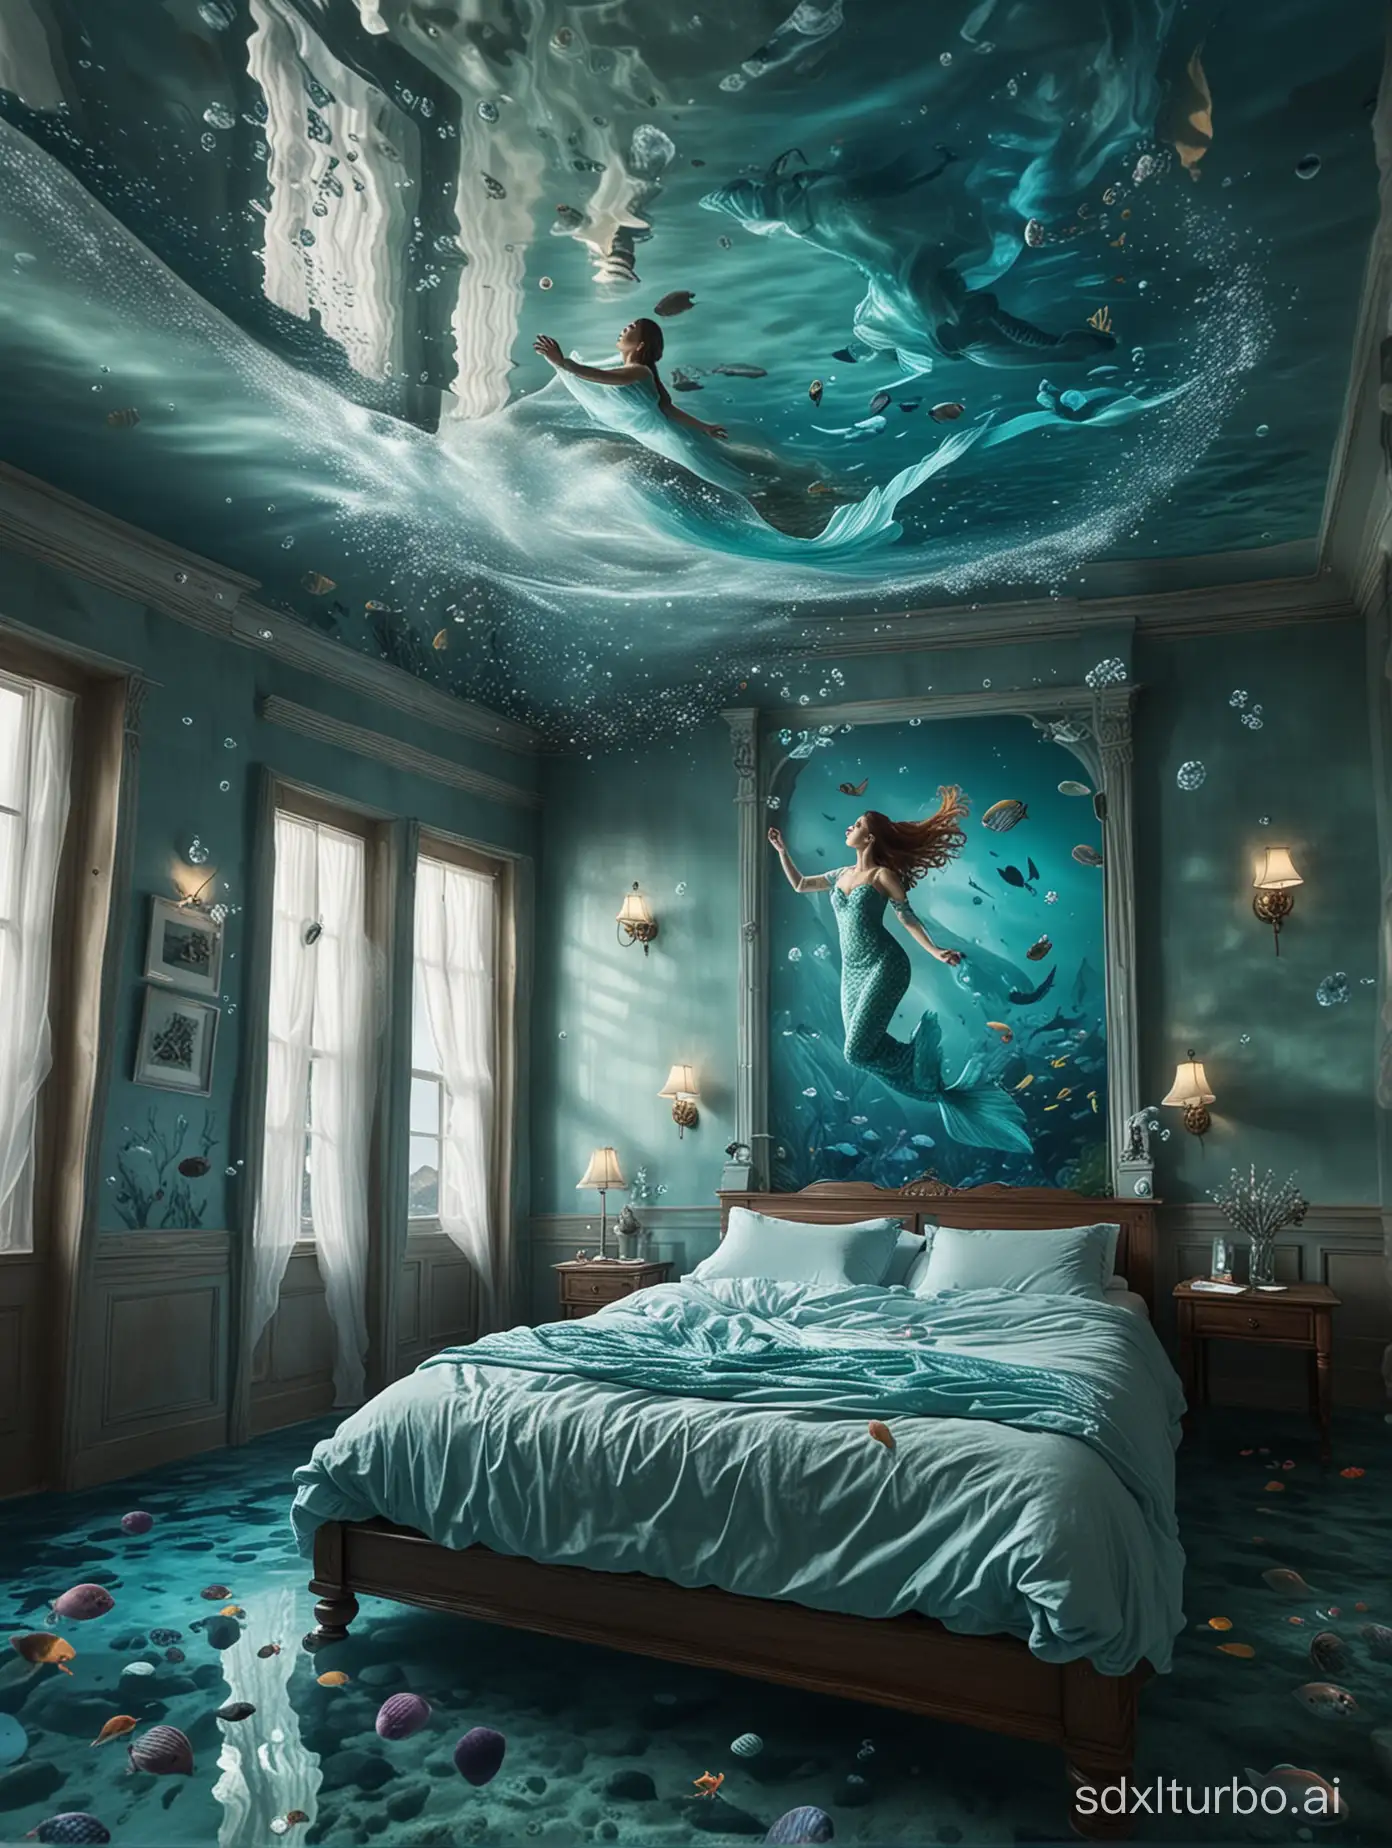 Surreal-Underwater-Bedroom-with-Floating-Woman-in-Mermaid-Dress